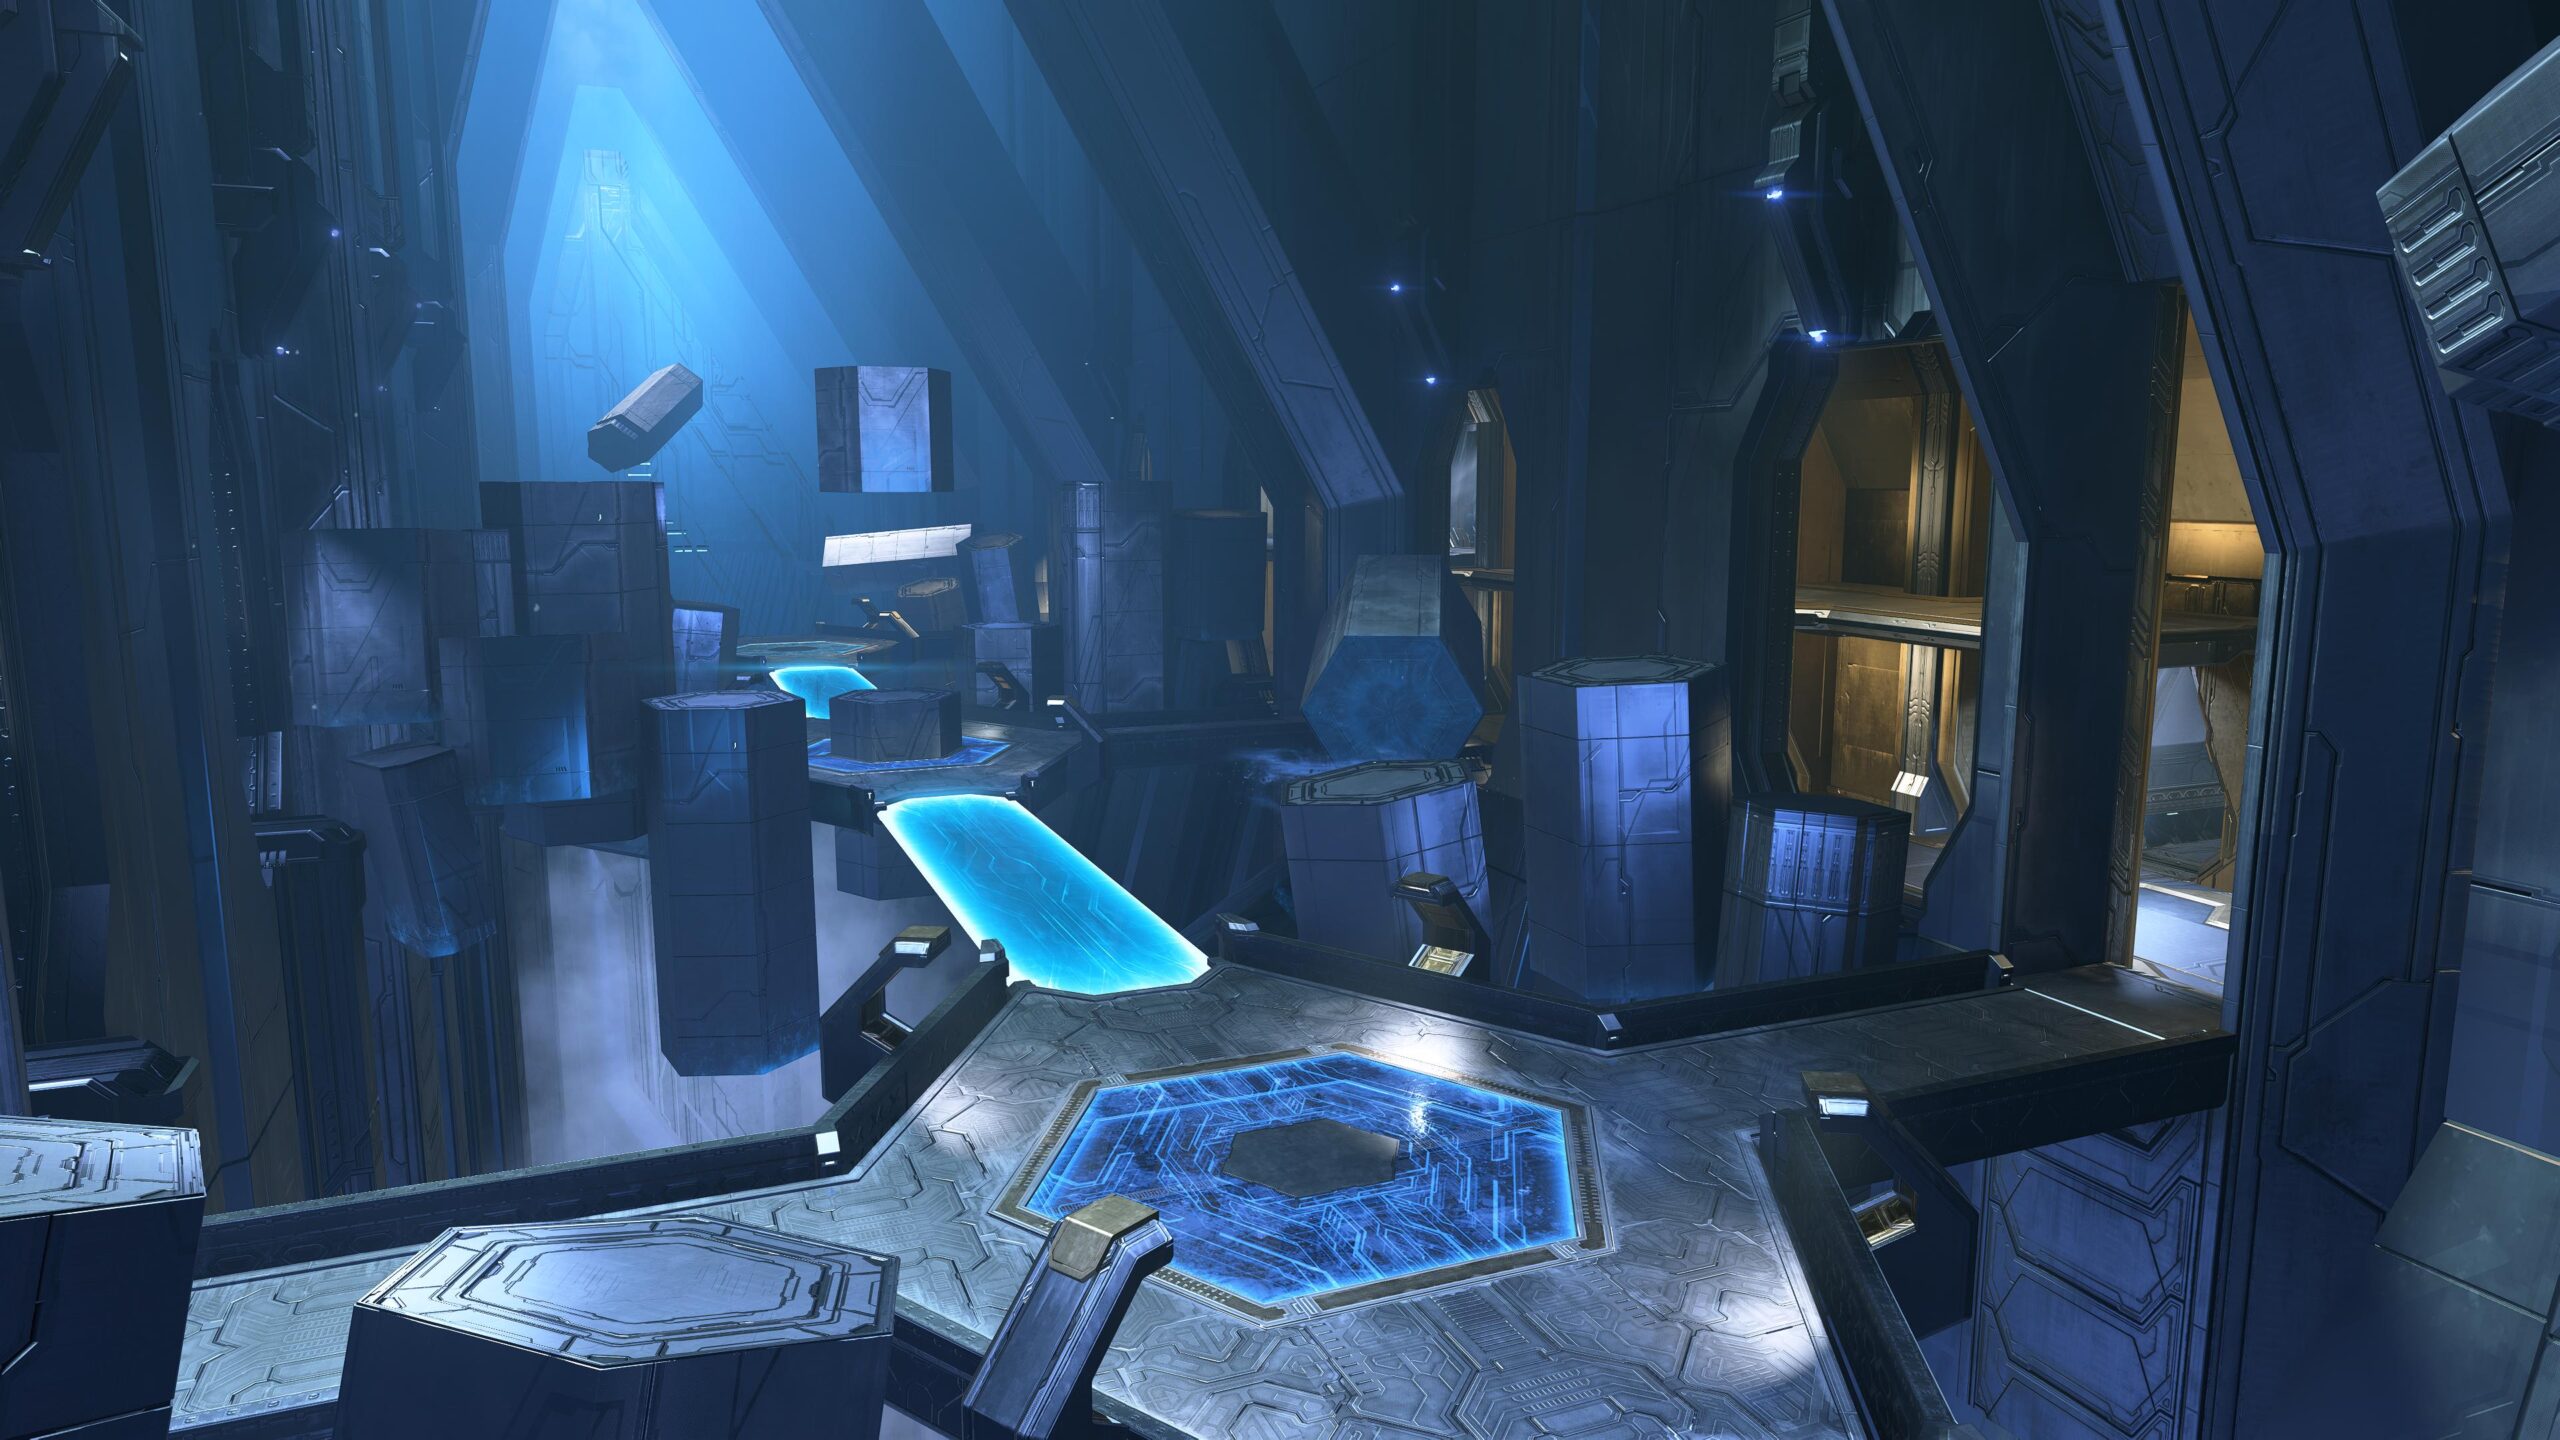 Изображения карт из 3 сезона Halo Infinite появились в сети - он стартует только в марте